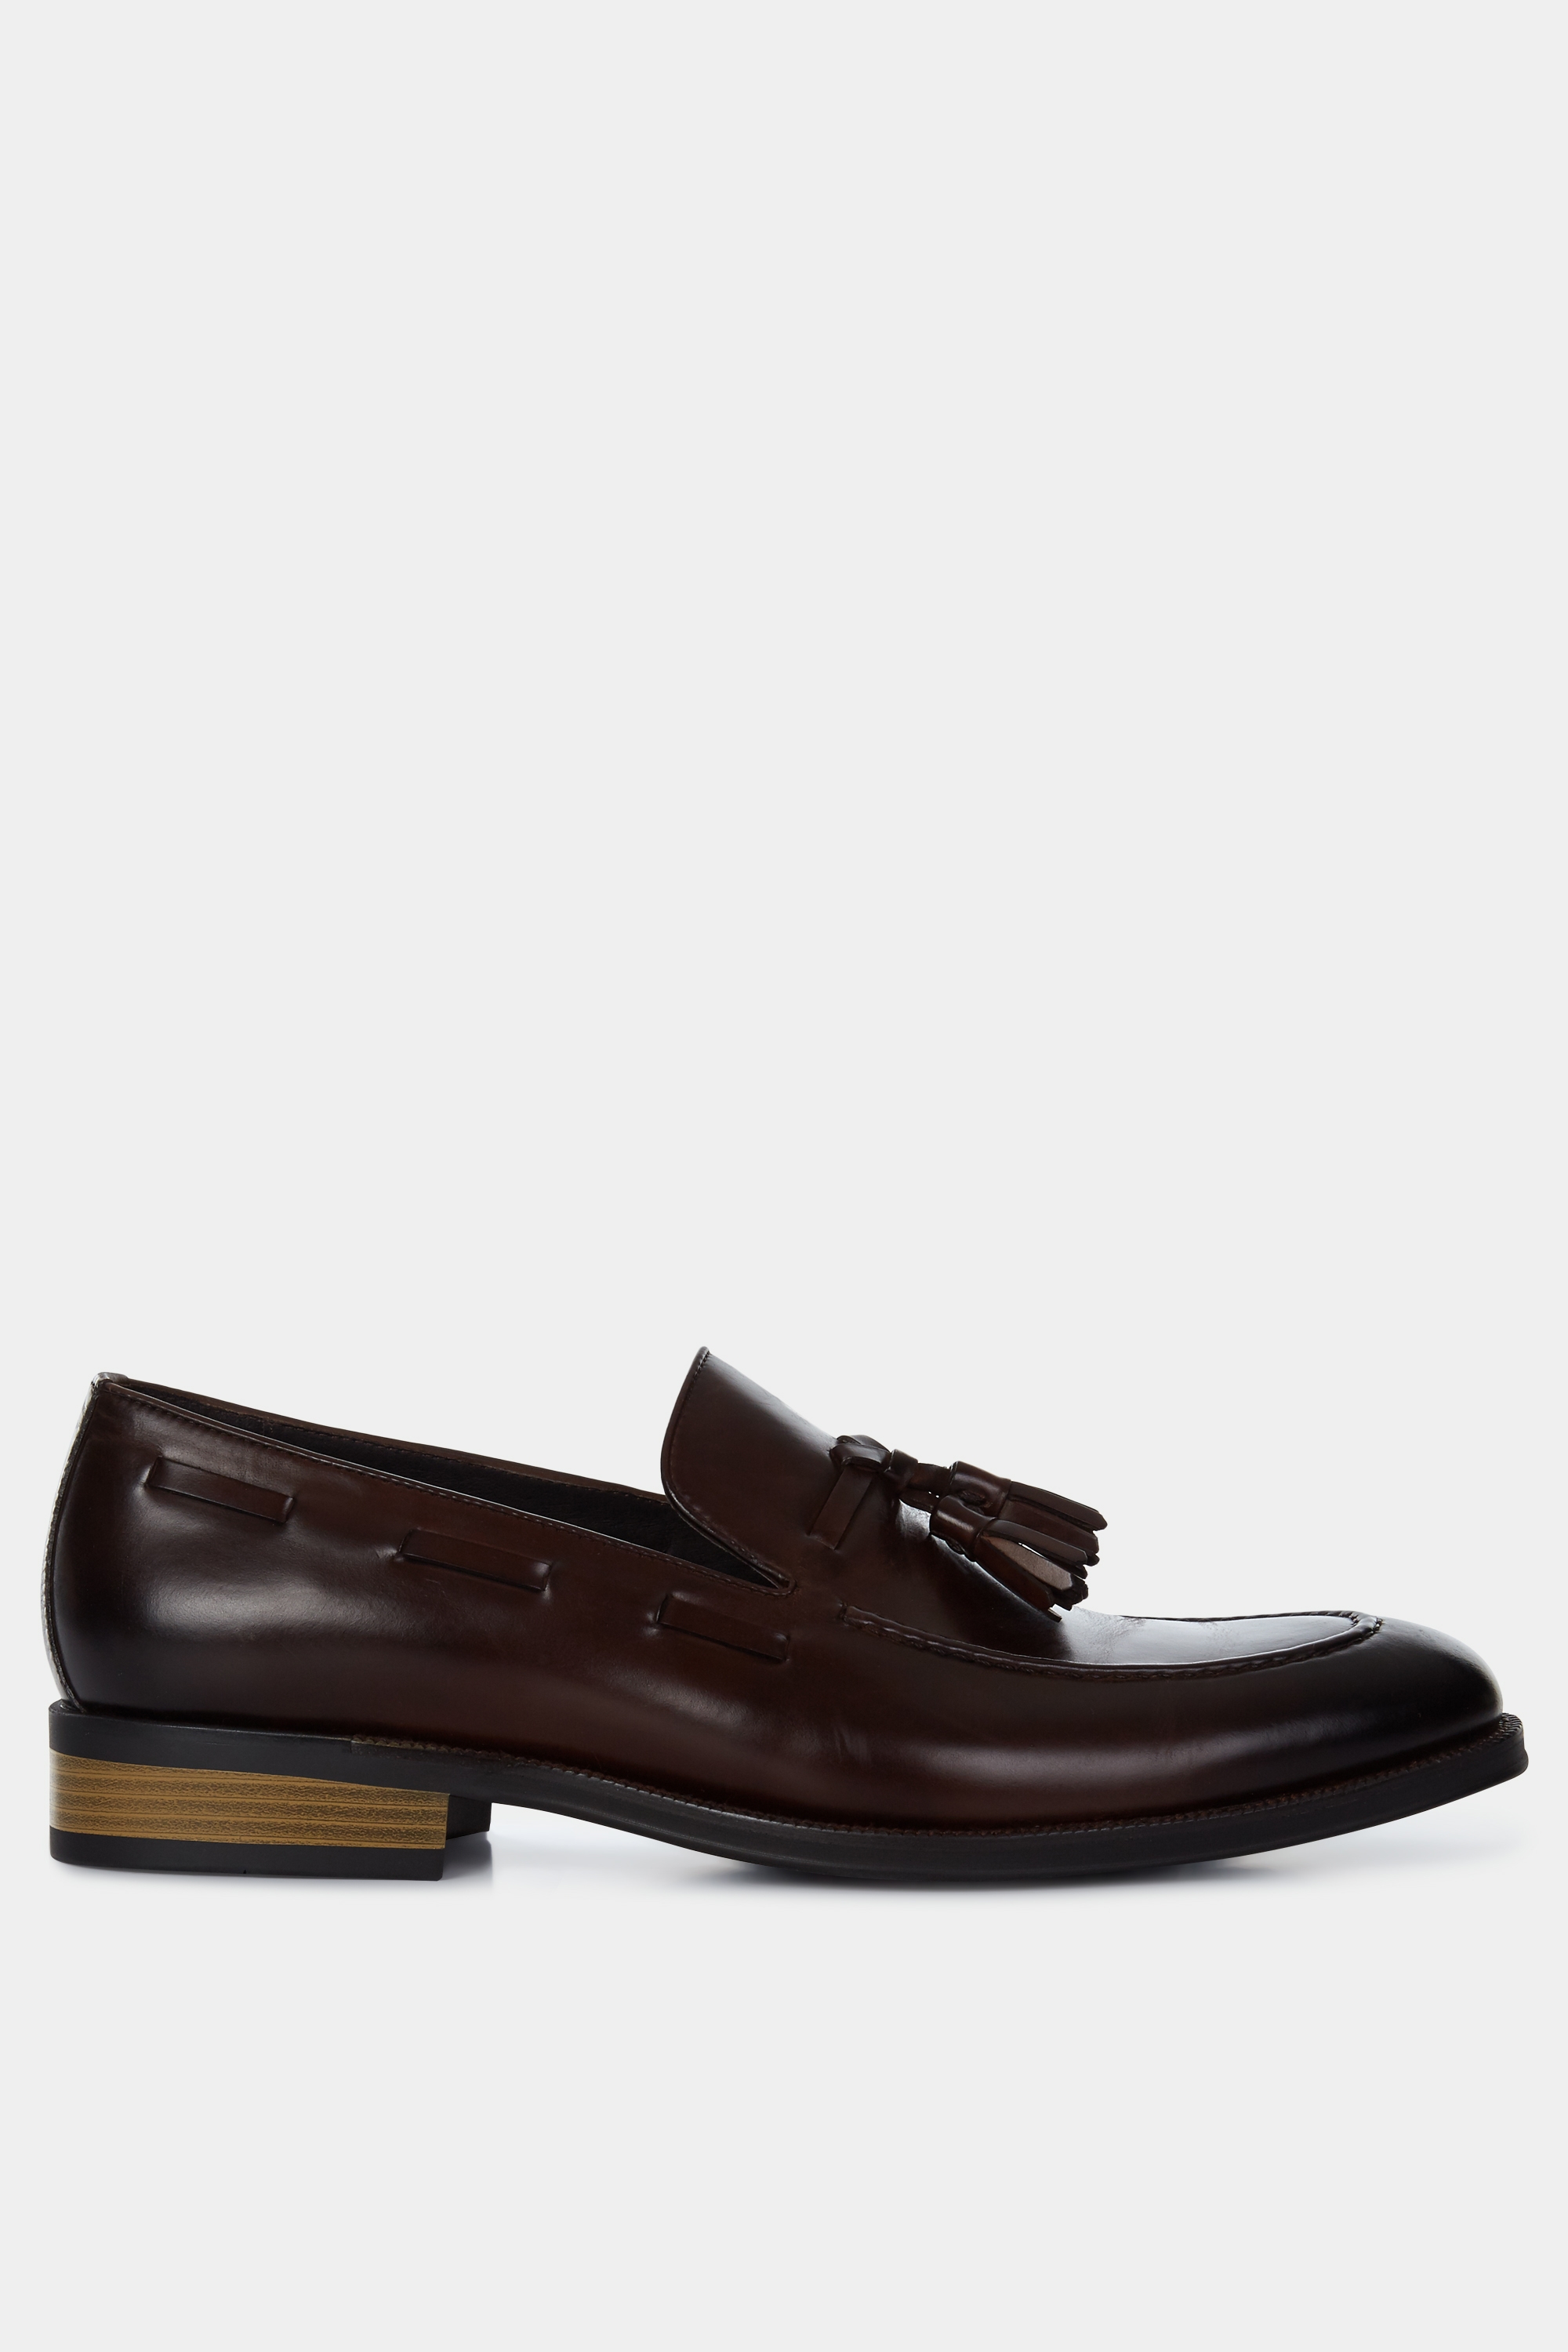 John White Nile Brown Tassel Loafer Shoe